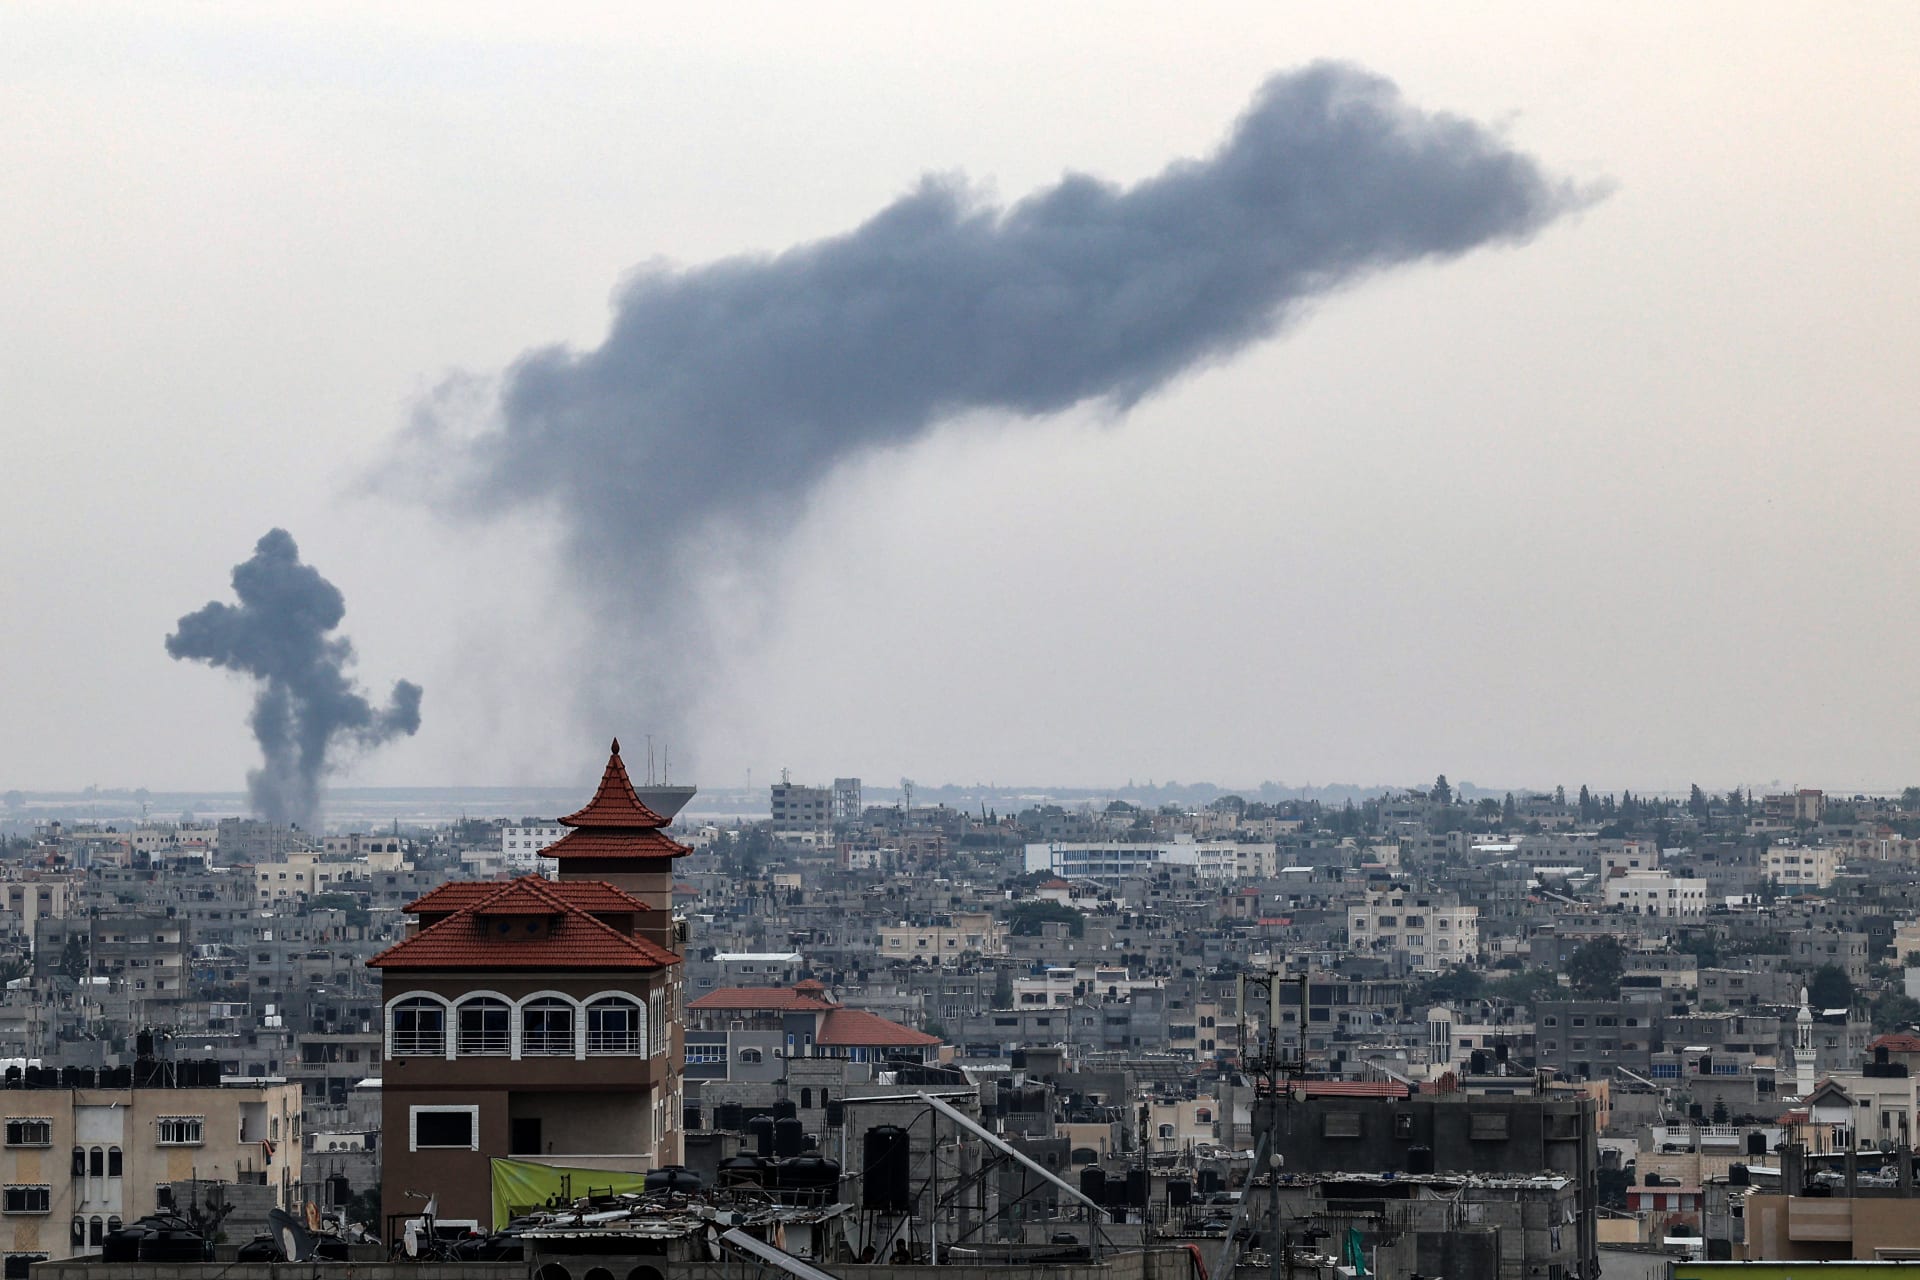  7305 شخصاً قتلوا في الهجمات الإسرائيلية على غزة منذ 7 أكتوبر/تشرين أول